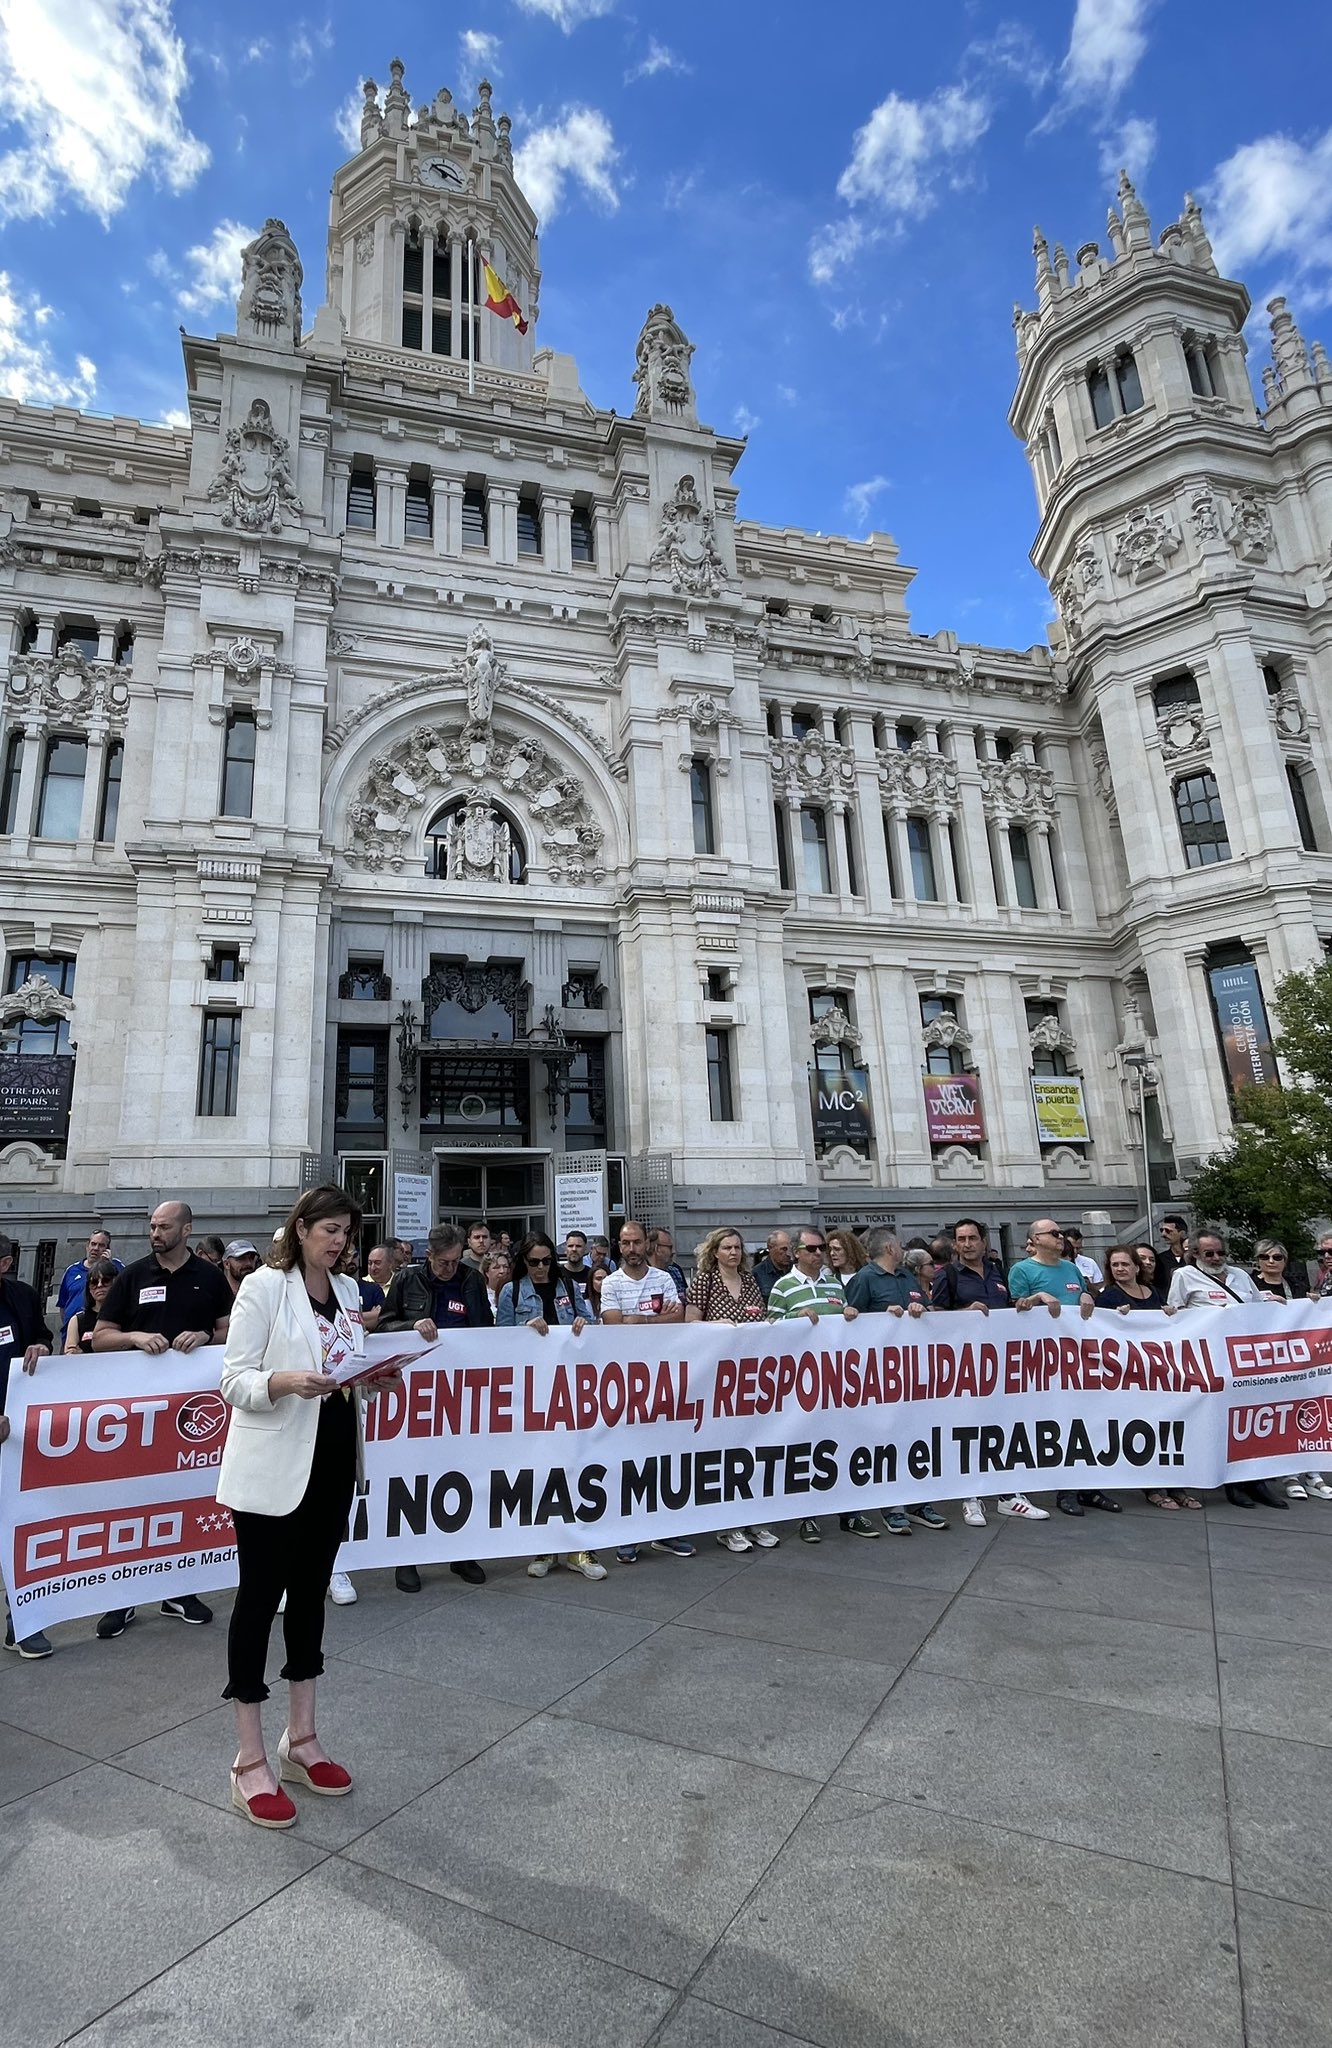 Los sindicatos exigen mayor control tras aumento de accidentes laborales en Madrid